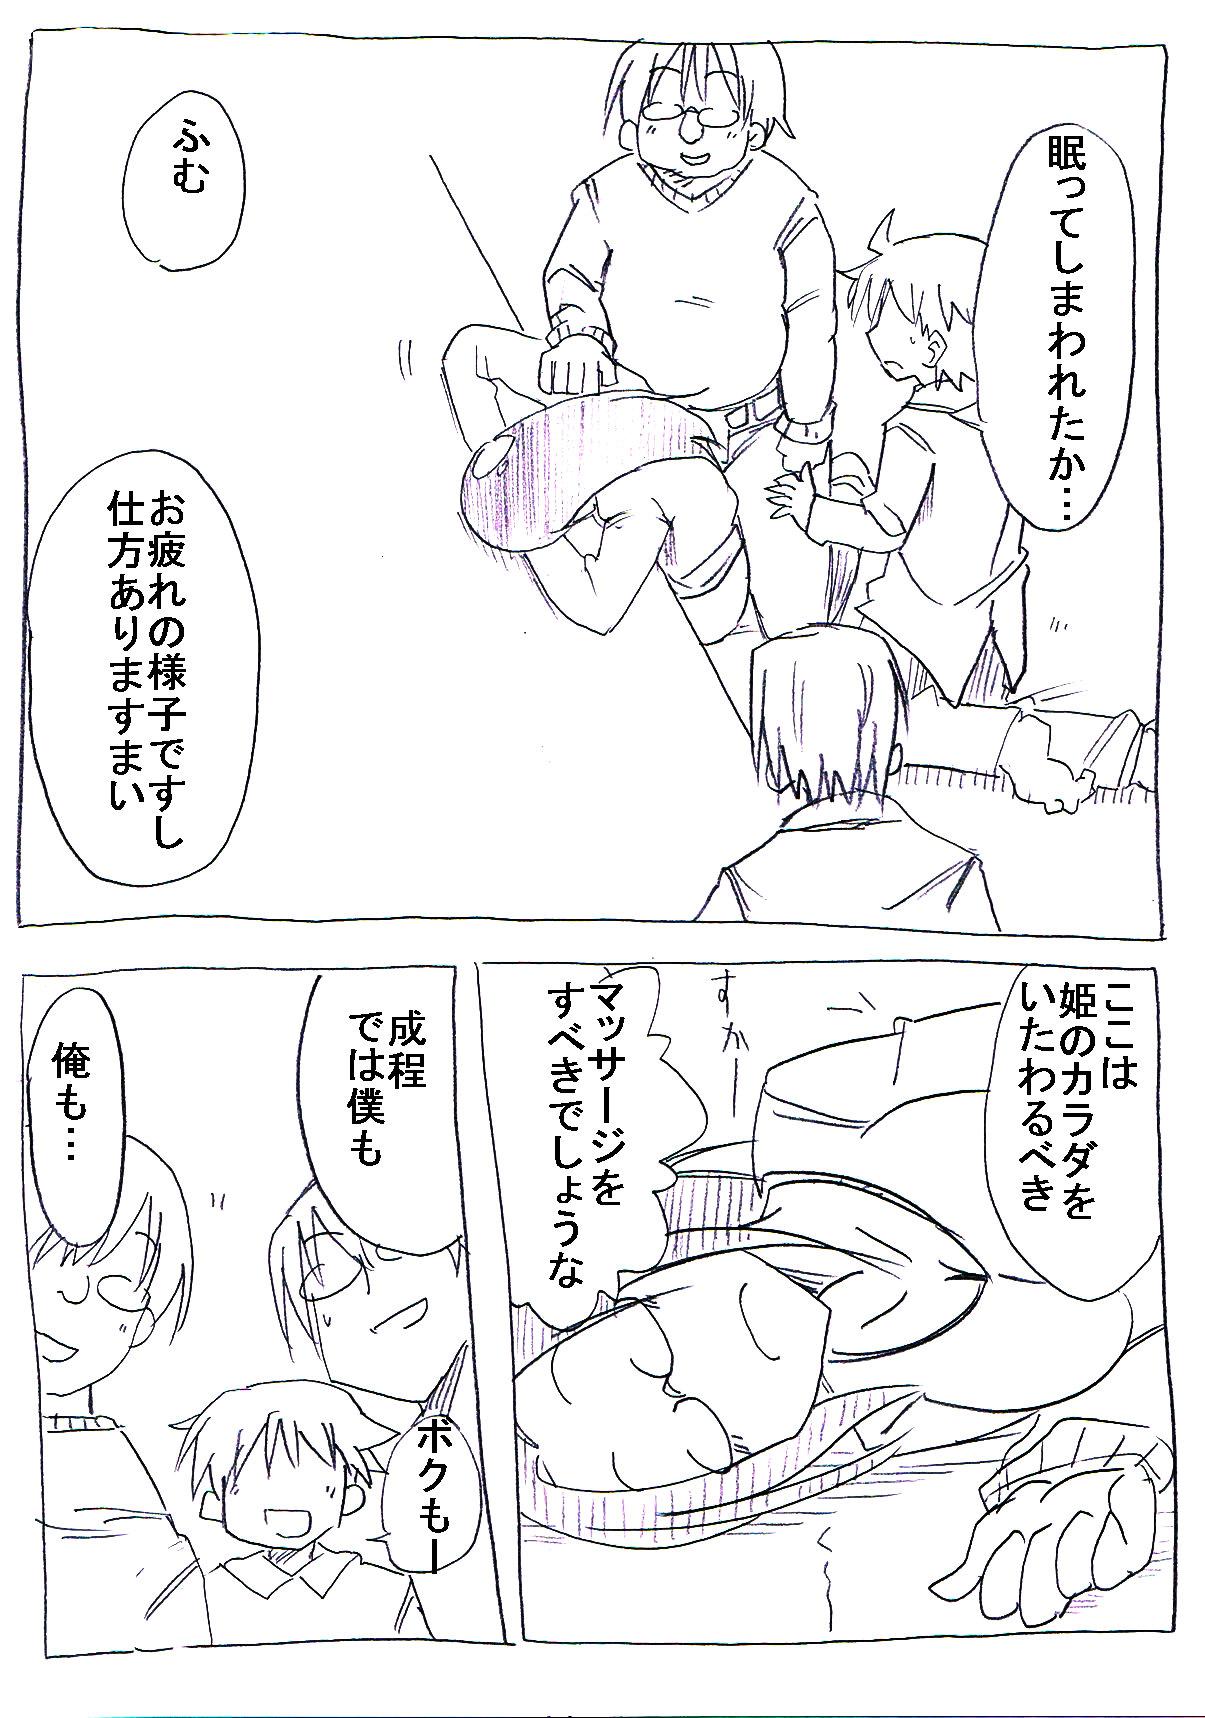 Fist OtaCir no Hime ga Neteiru Aida ni Torimaki ni Okasareru Culazo - Page 10